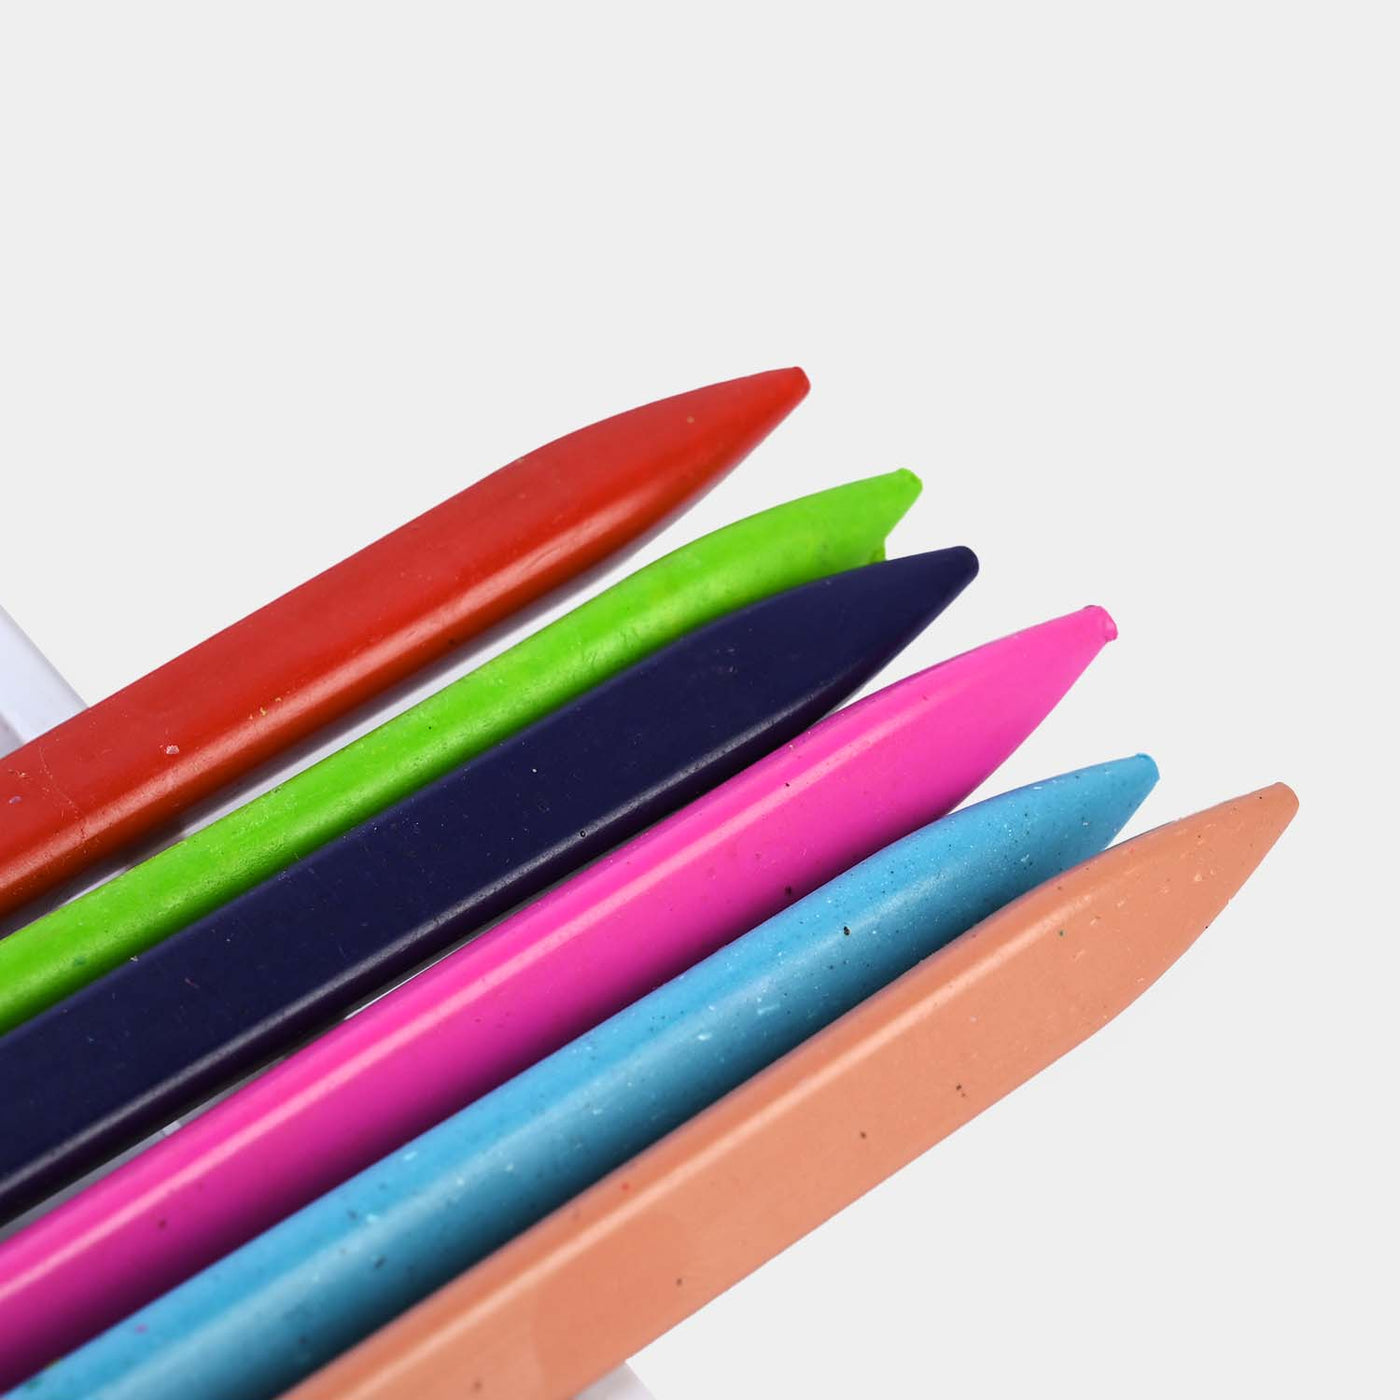 Plastic Crayons | 12PCs